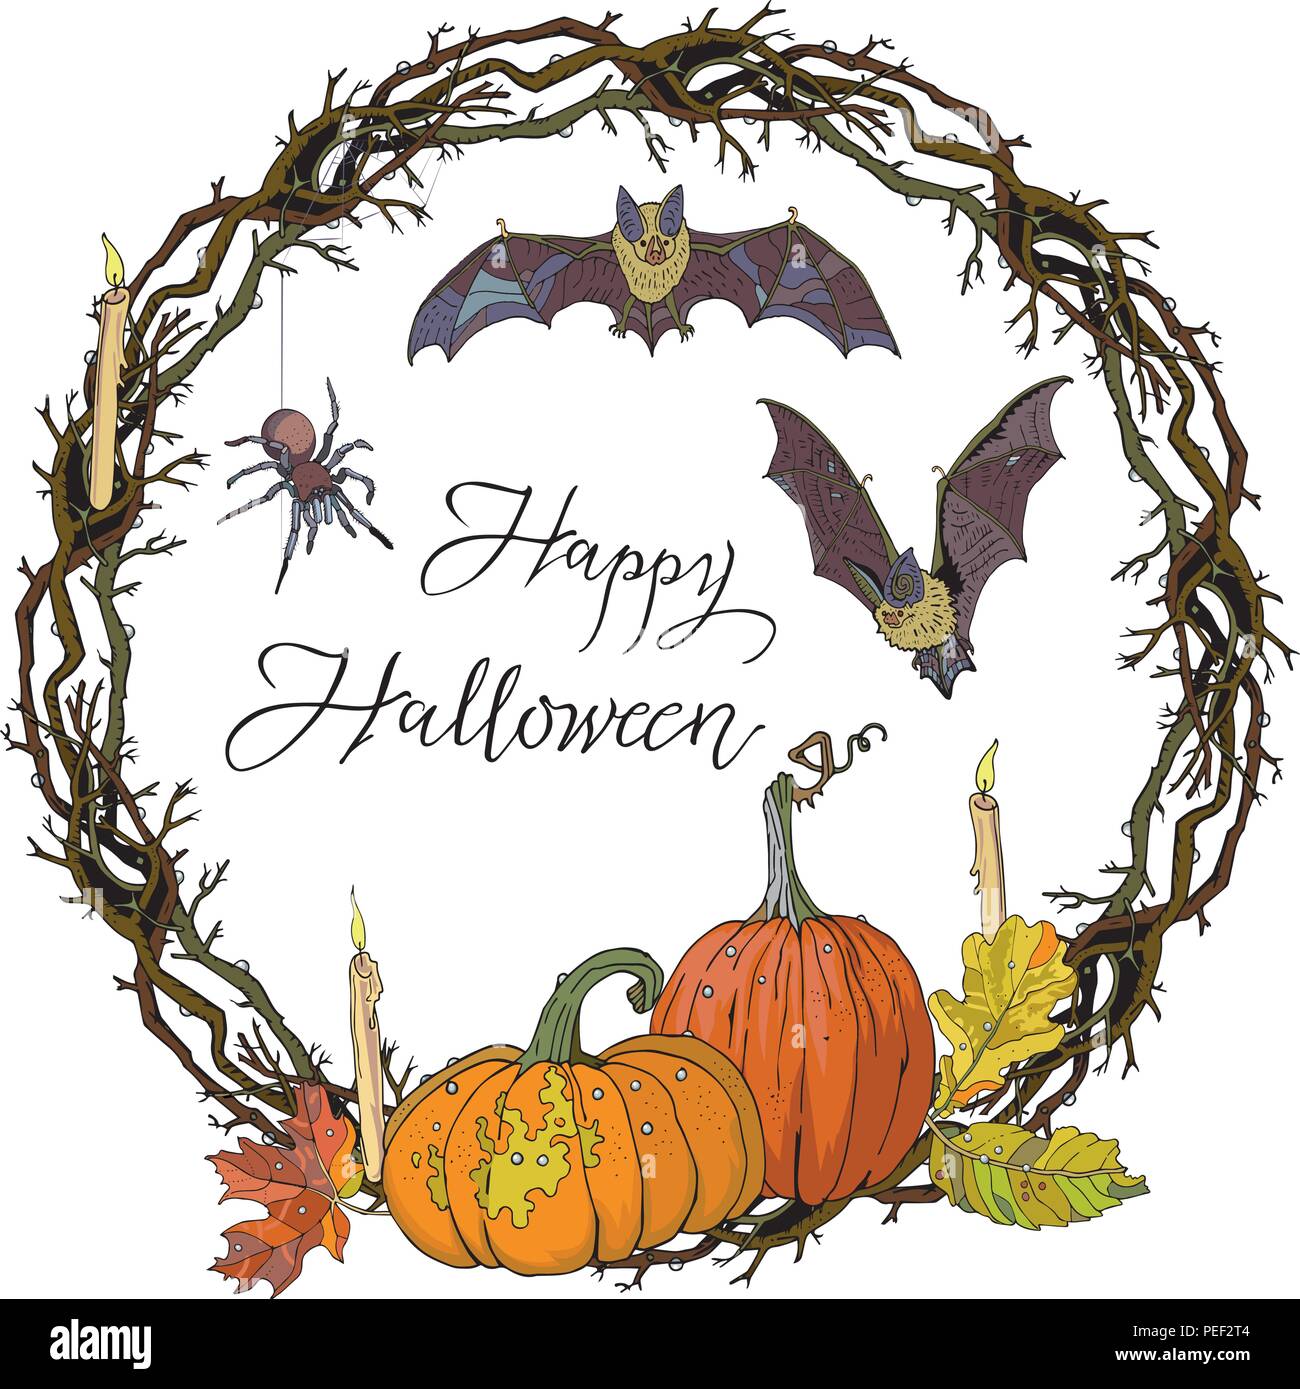 Halloween round gotico ghirlanda di rami con zucche, candele, foglie di autunno, pipistrelli e spider. Garland per invito, biglietto di auguri, poster design, pubblicità. Disegnata a mano illustrazione vettoriale. Illustrazione Vettoriale